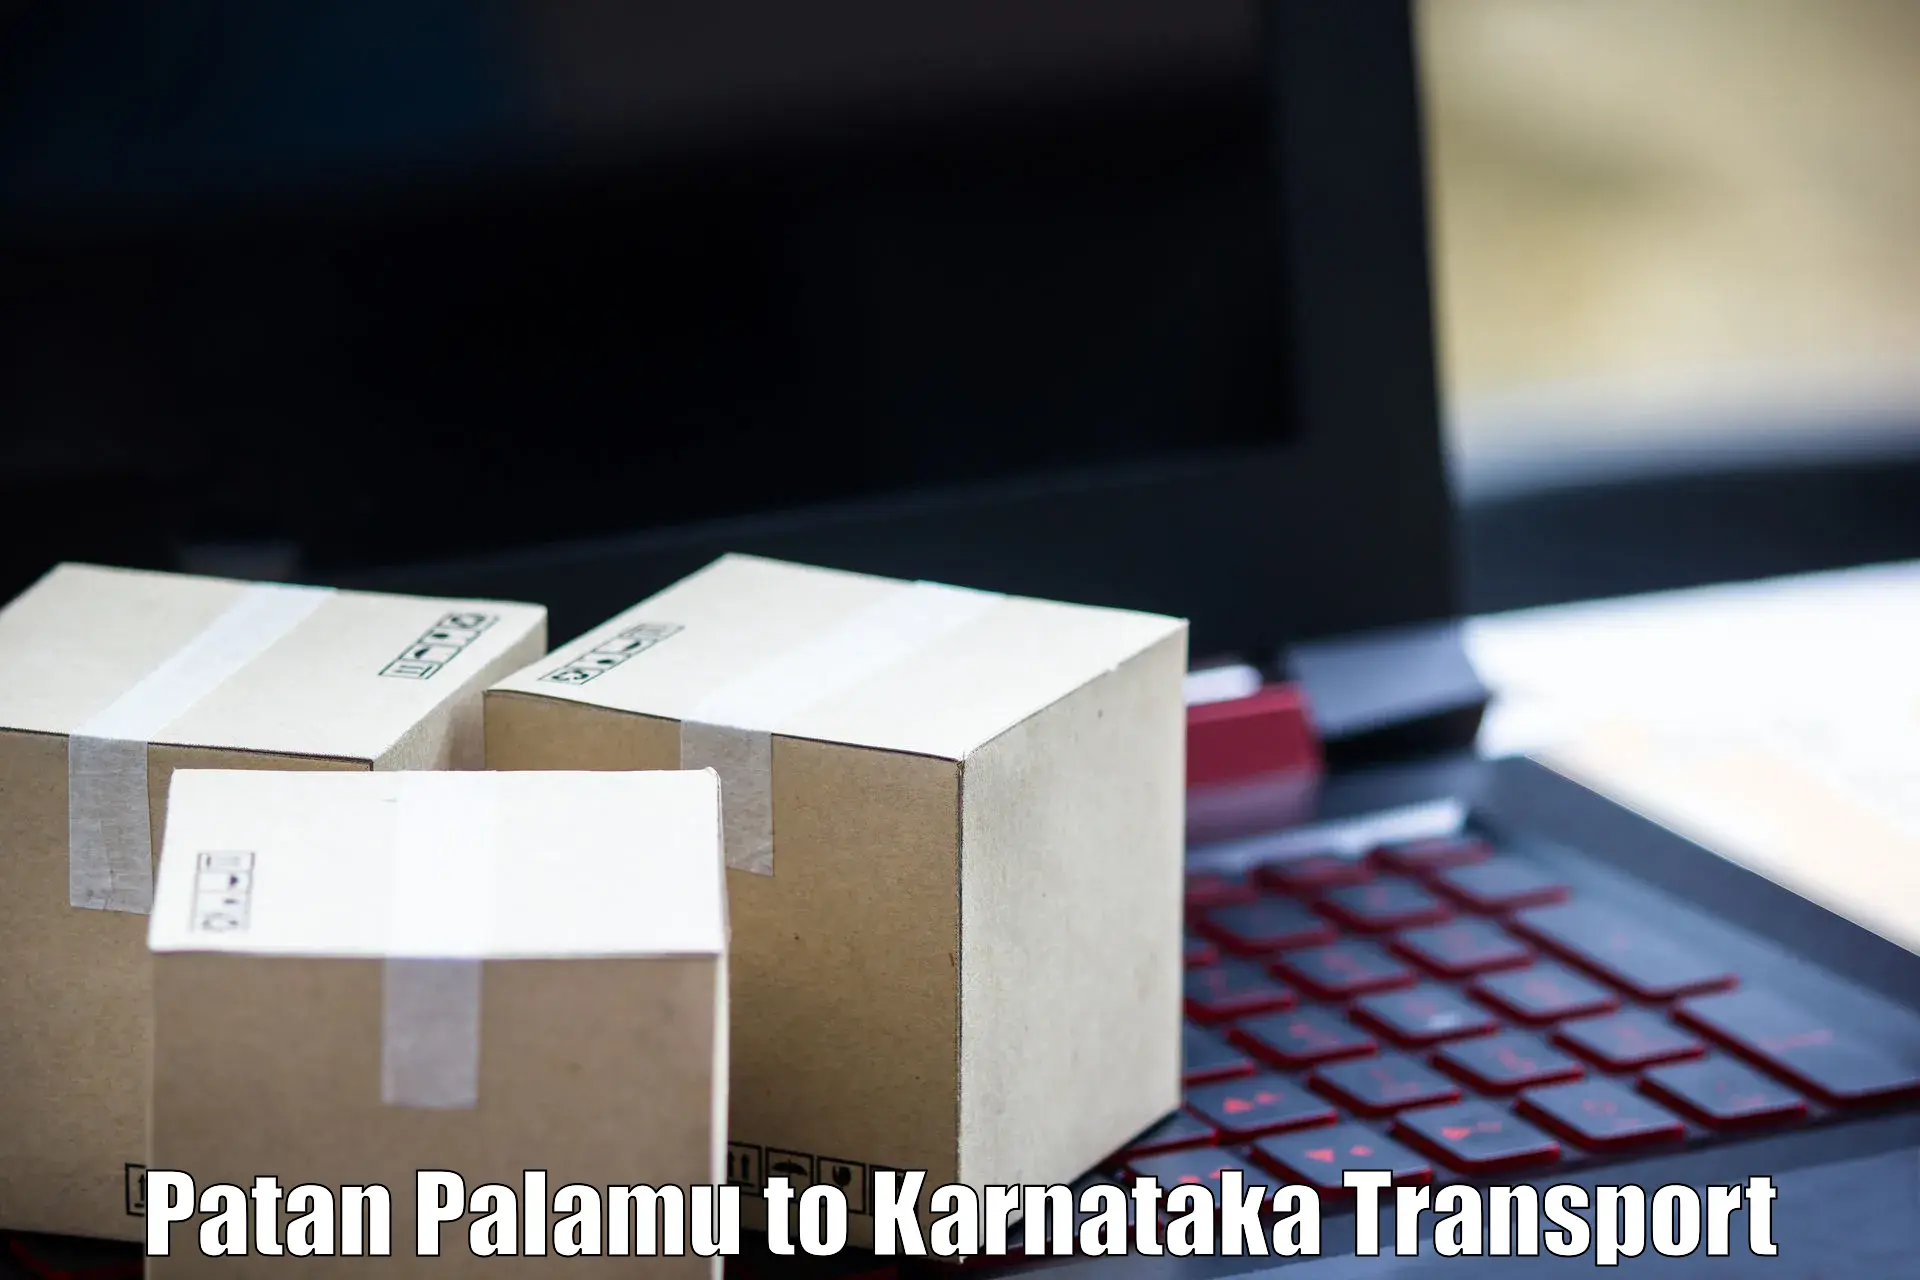 Shipping partner Patan Palamu to Sirsi